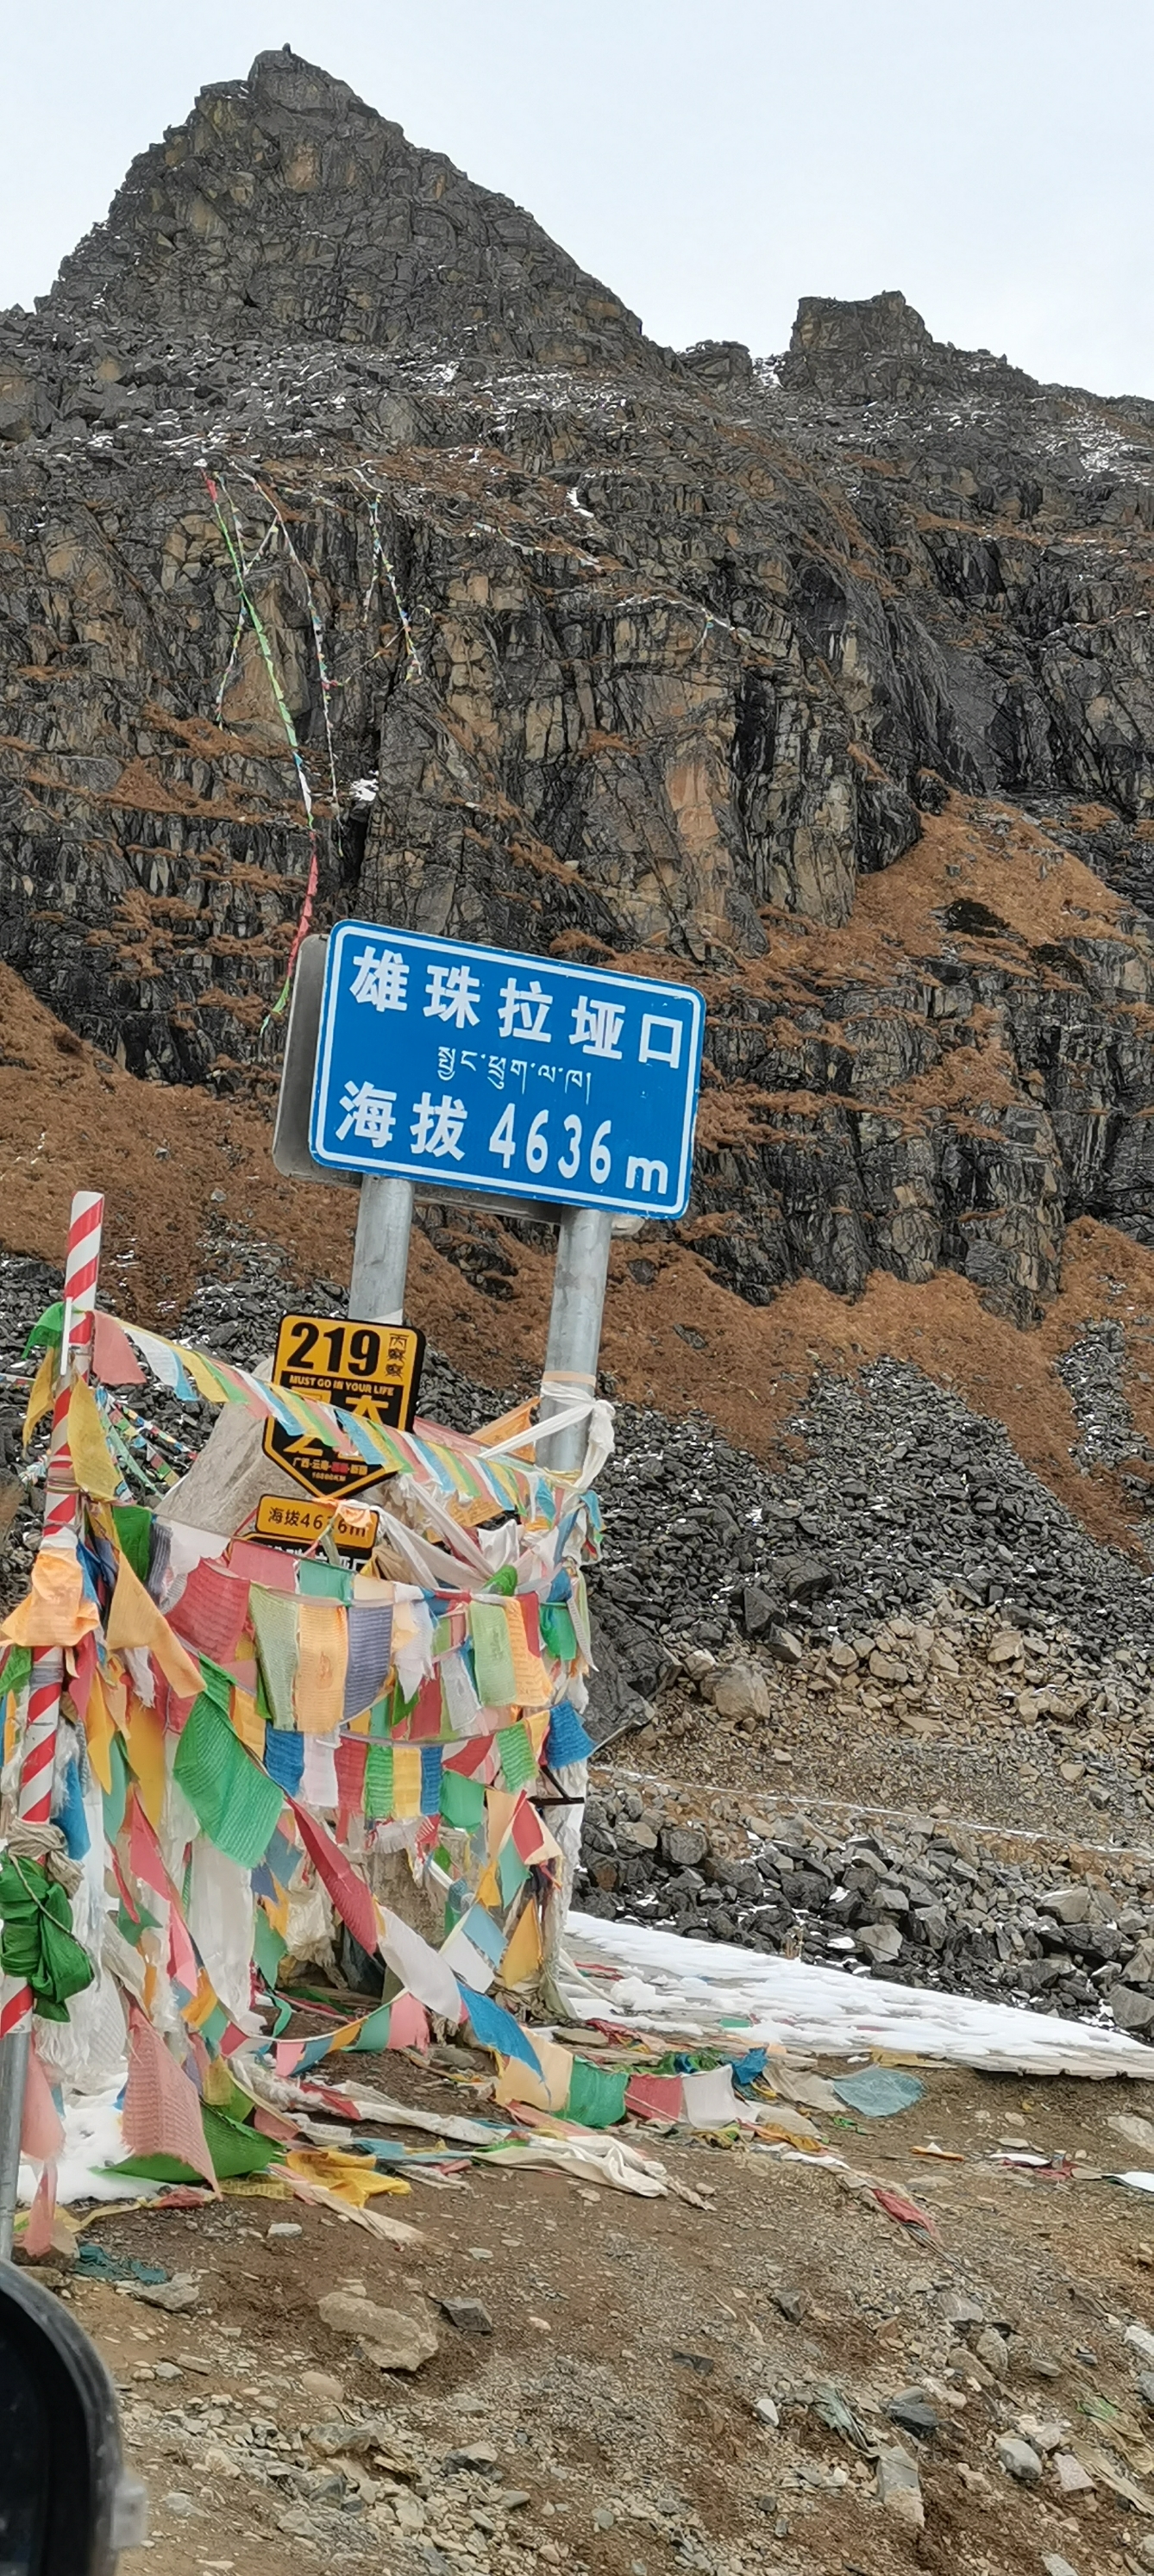 10月底自驾西藏，丙察察线，察瓦龙到察隅县，需一大早出发，因沿途风景非常好，怒江基本上一路相伴，有原